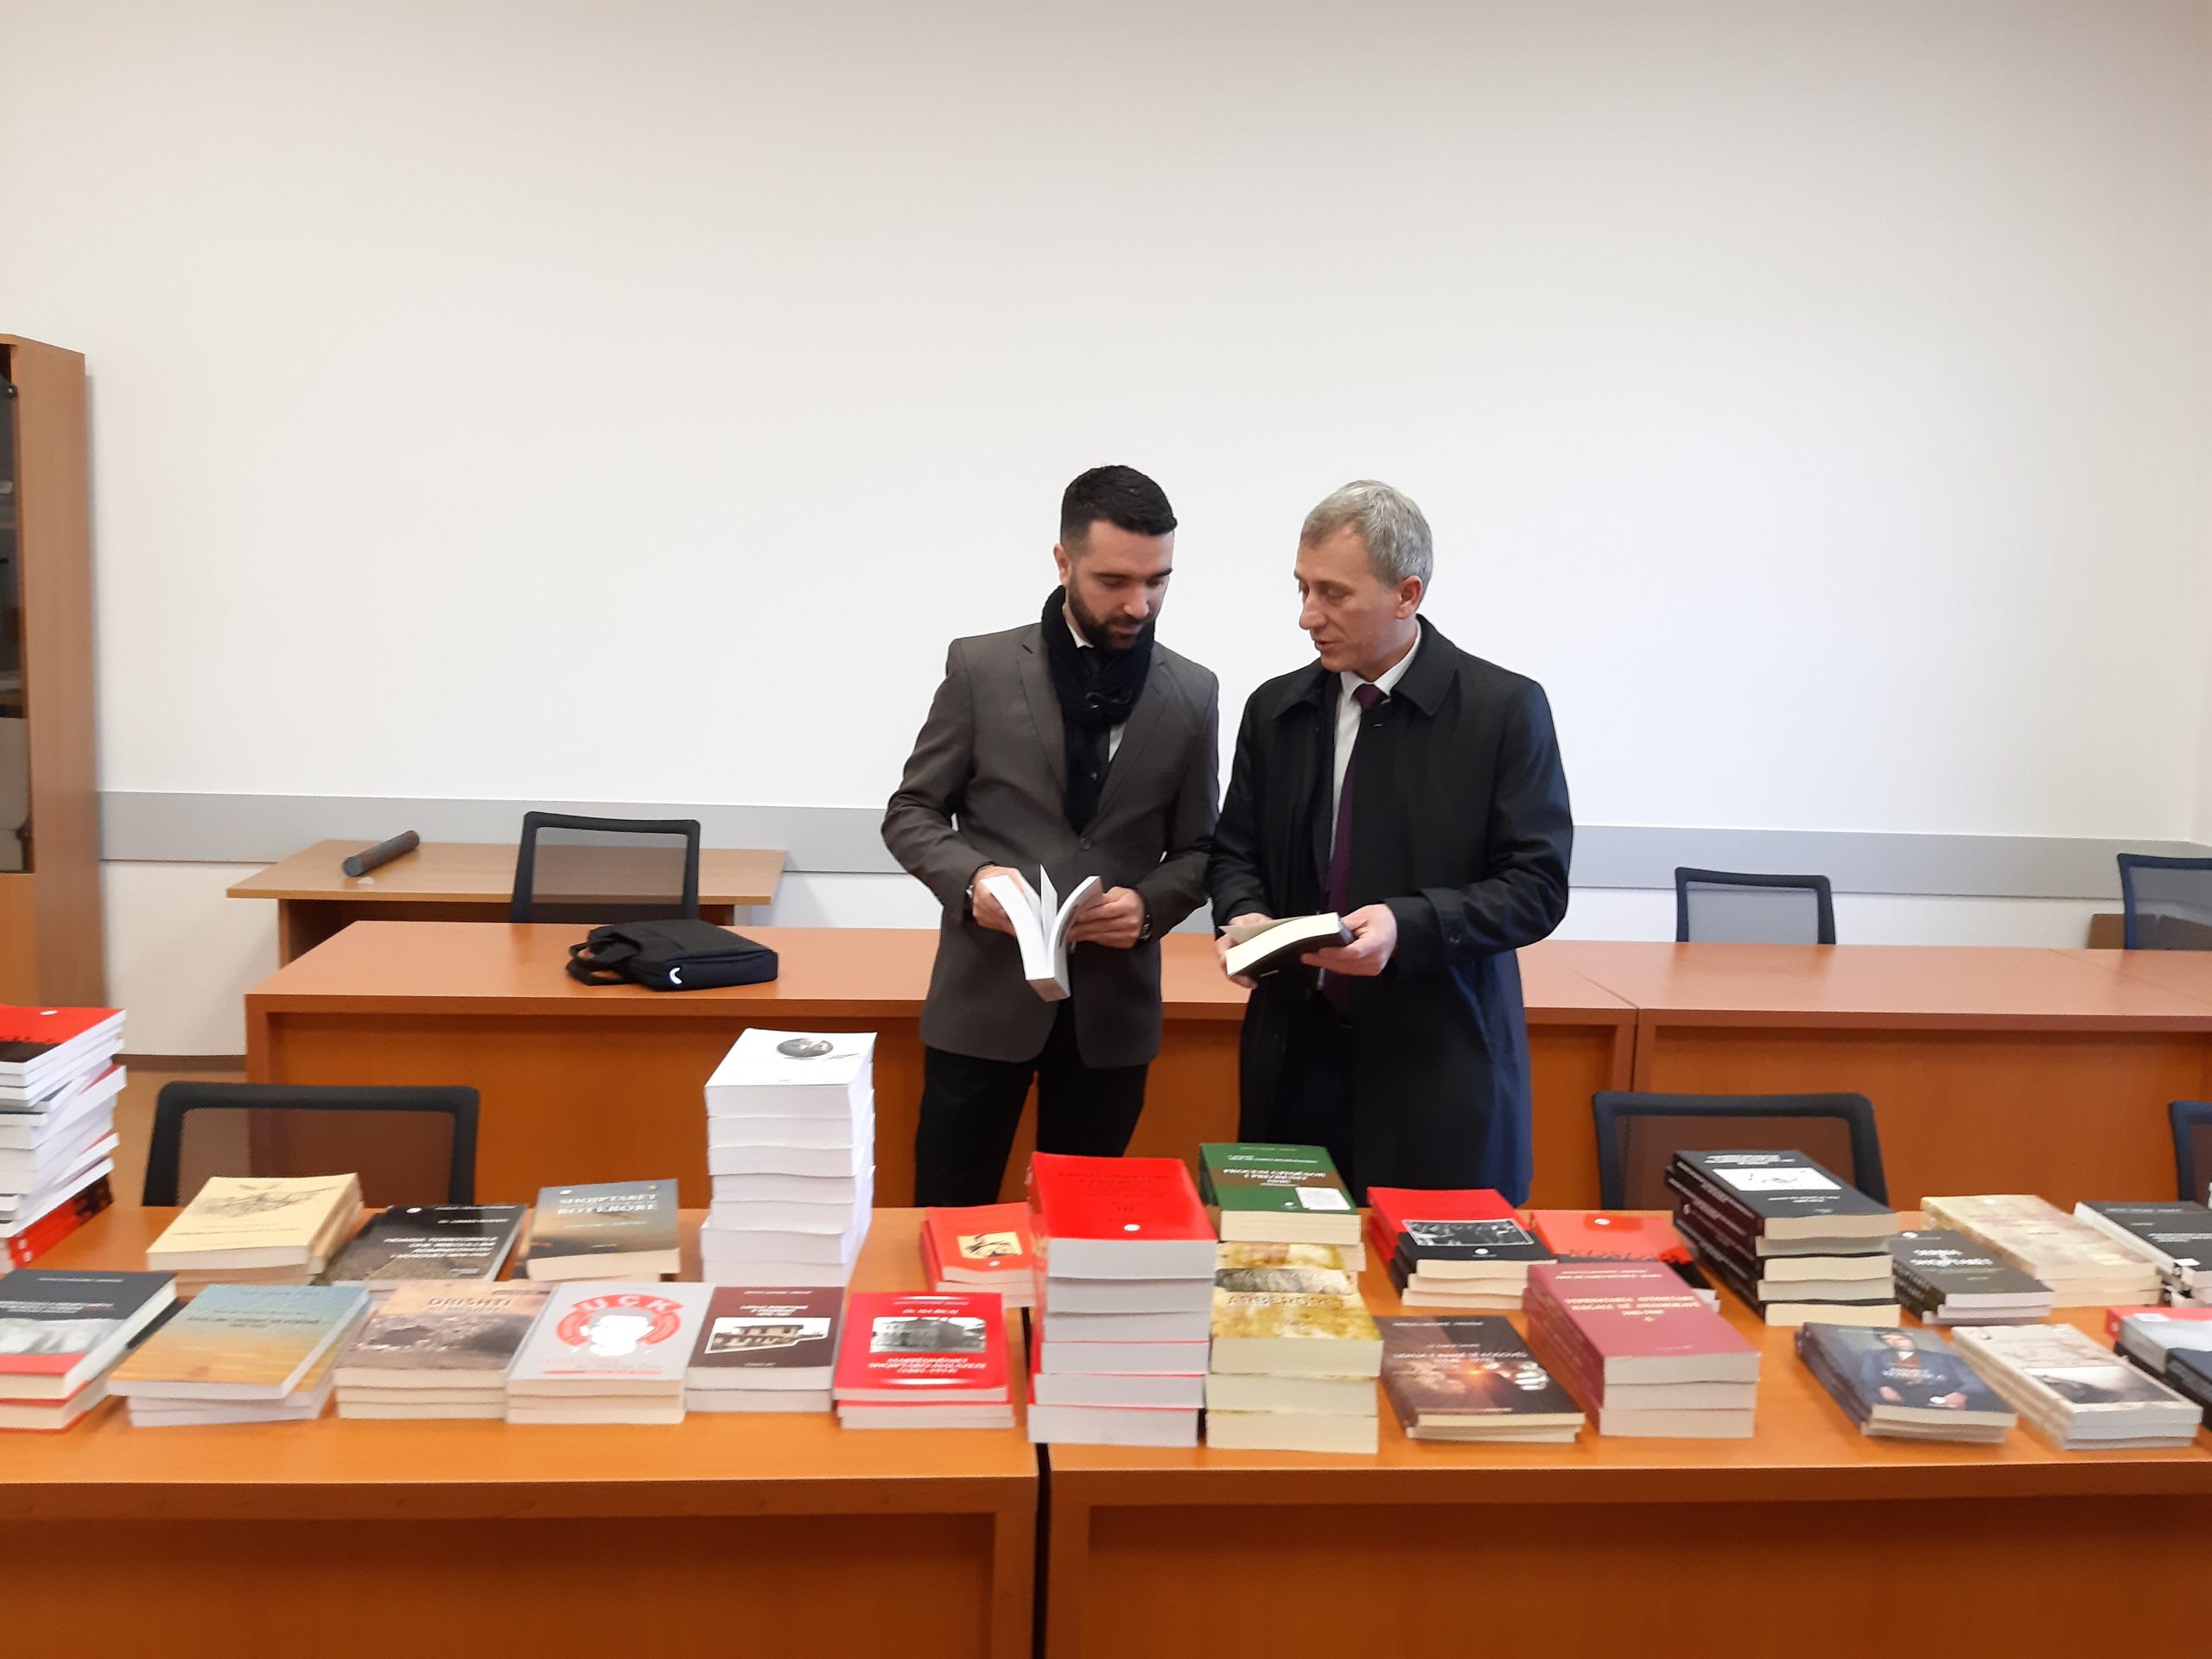 Instituti I Historisë Dhuroi 150 Libra Për Bibliotekën Universitare